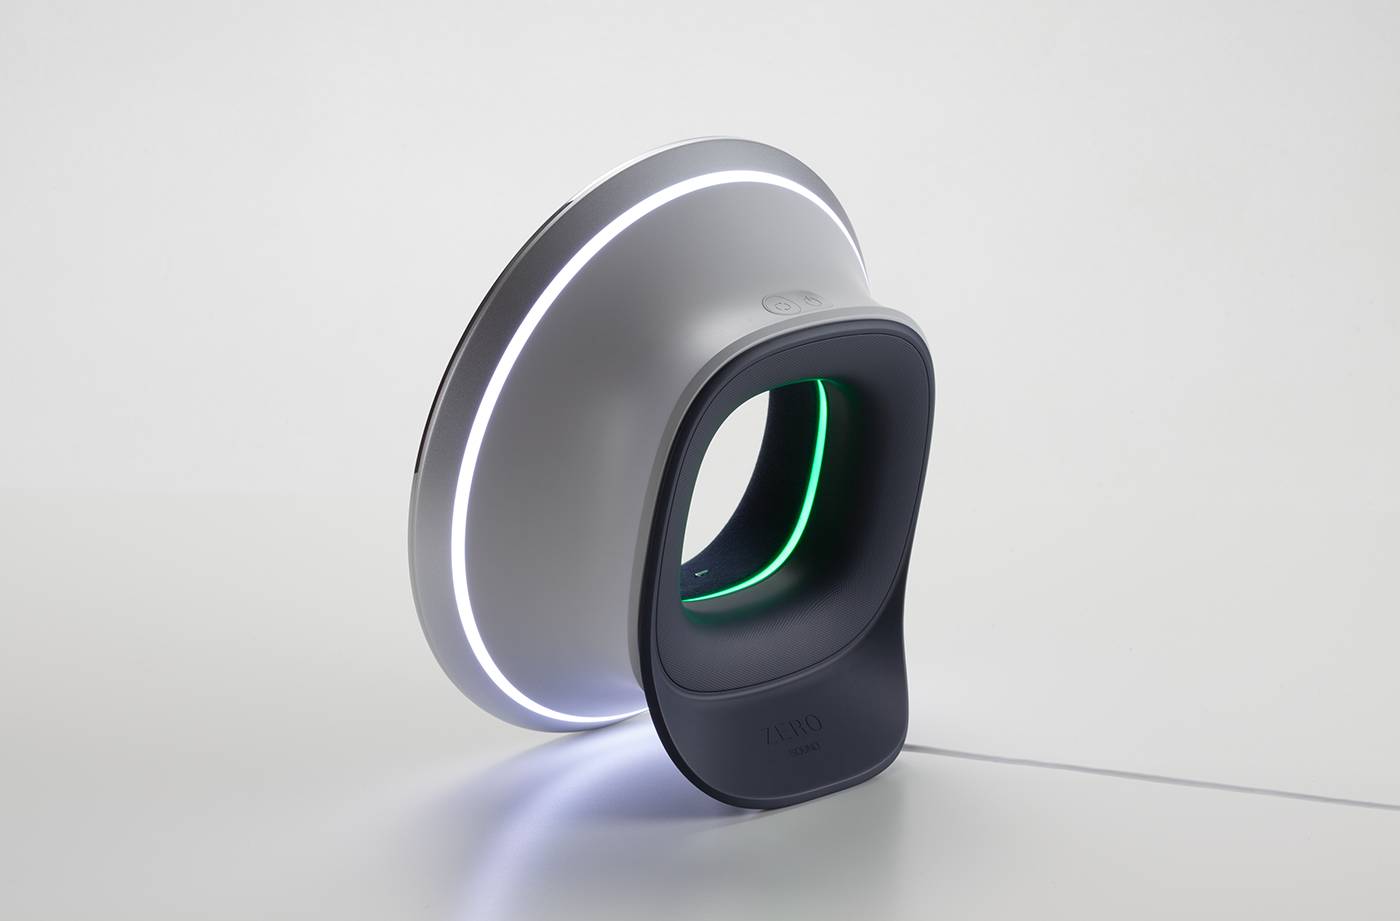 eclipse sound speaker light Samsung bkid Smart zero